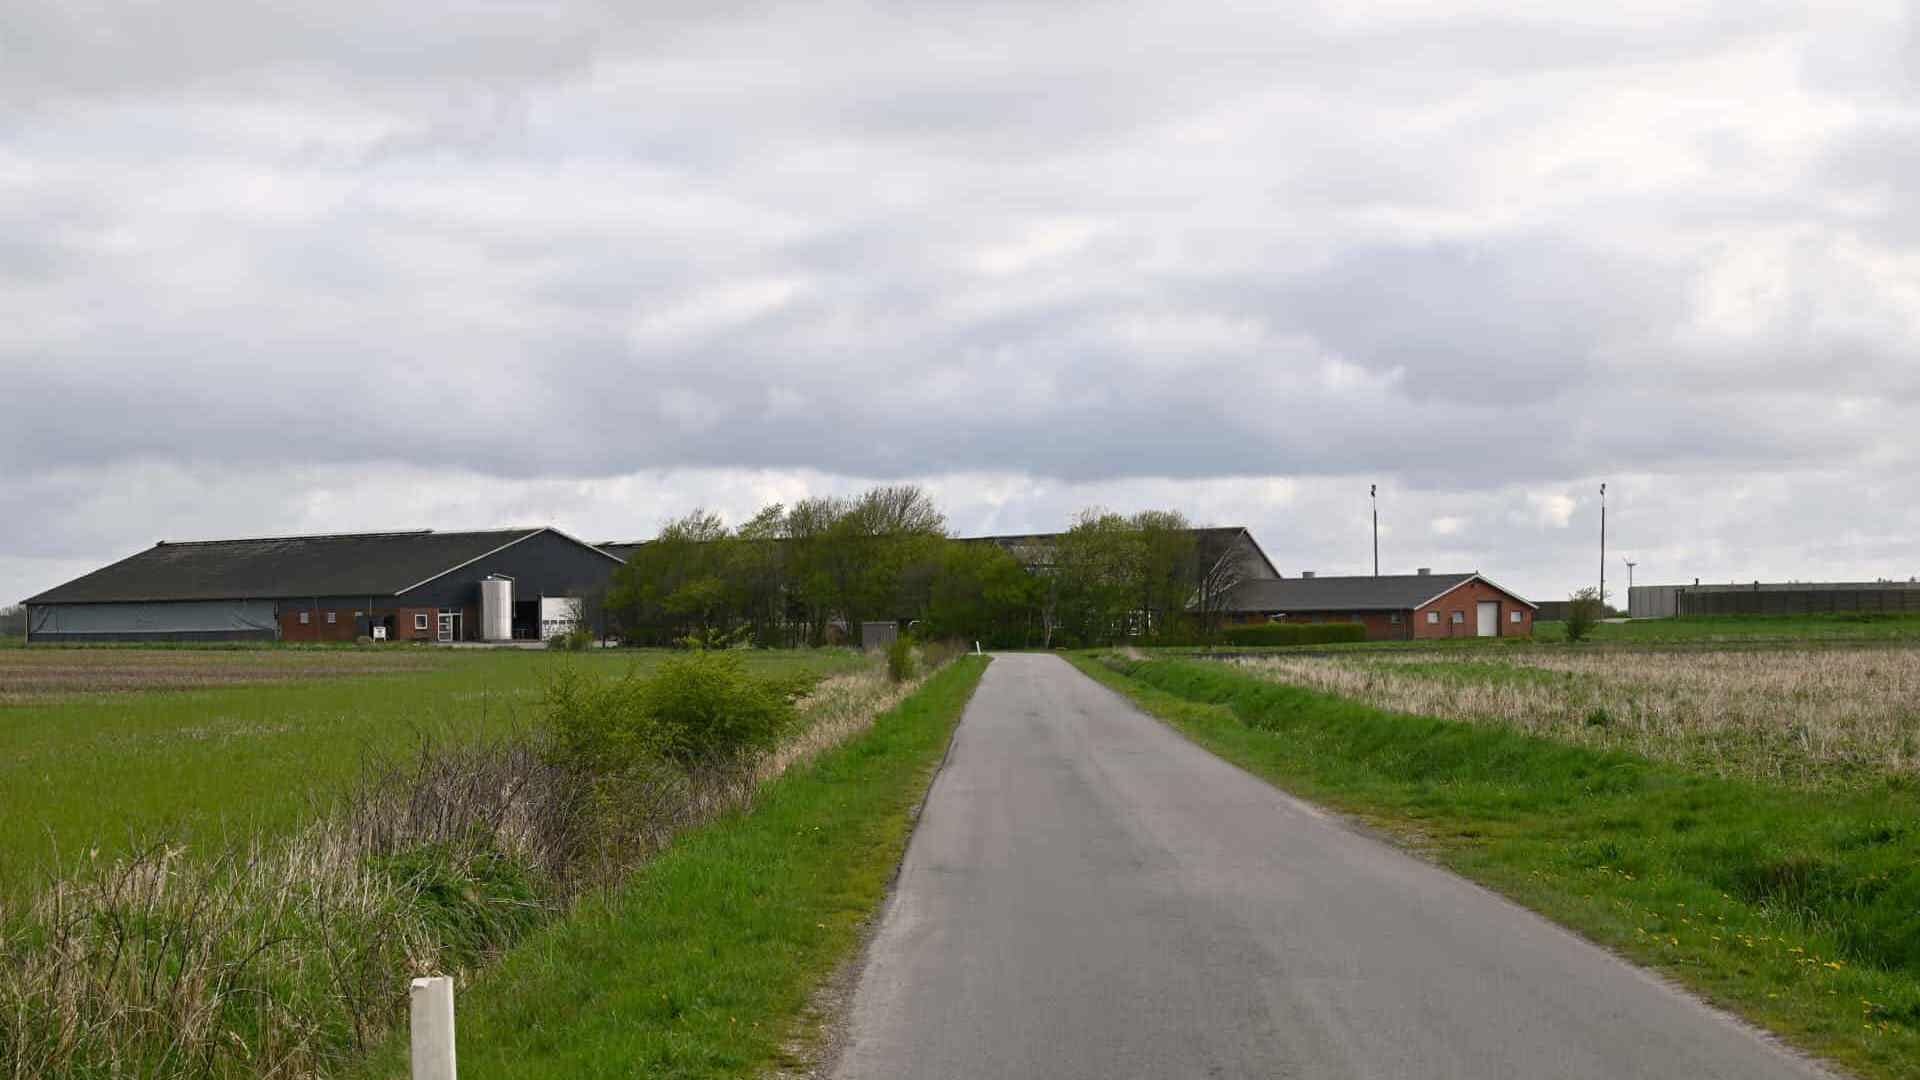 1/2
Et af de store opkøb, som virksomheden Olvo står bag, er gården på Høgslundvej 3 med tilhørende landbrugsarealer. Prisen er knap 27,9 millioner kroner. Foto: 